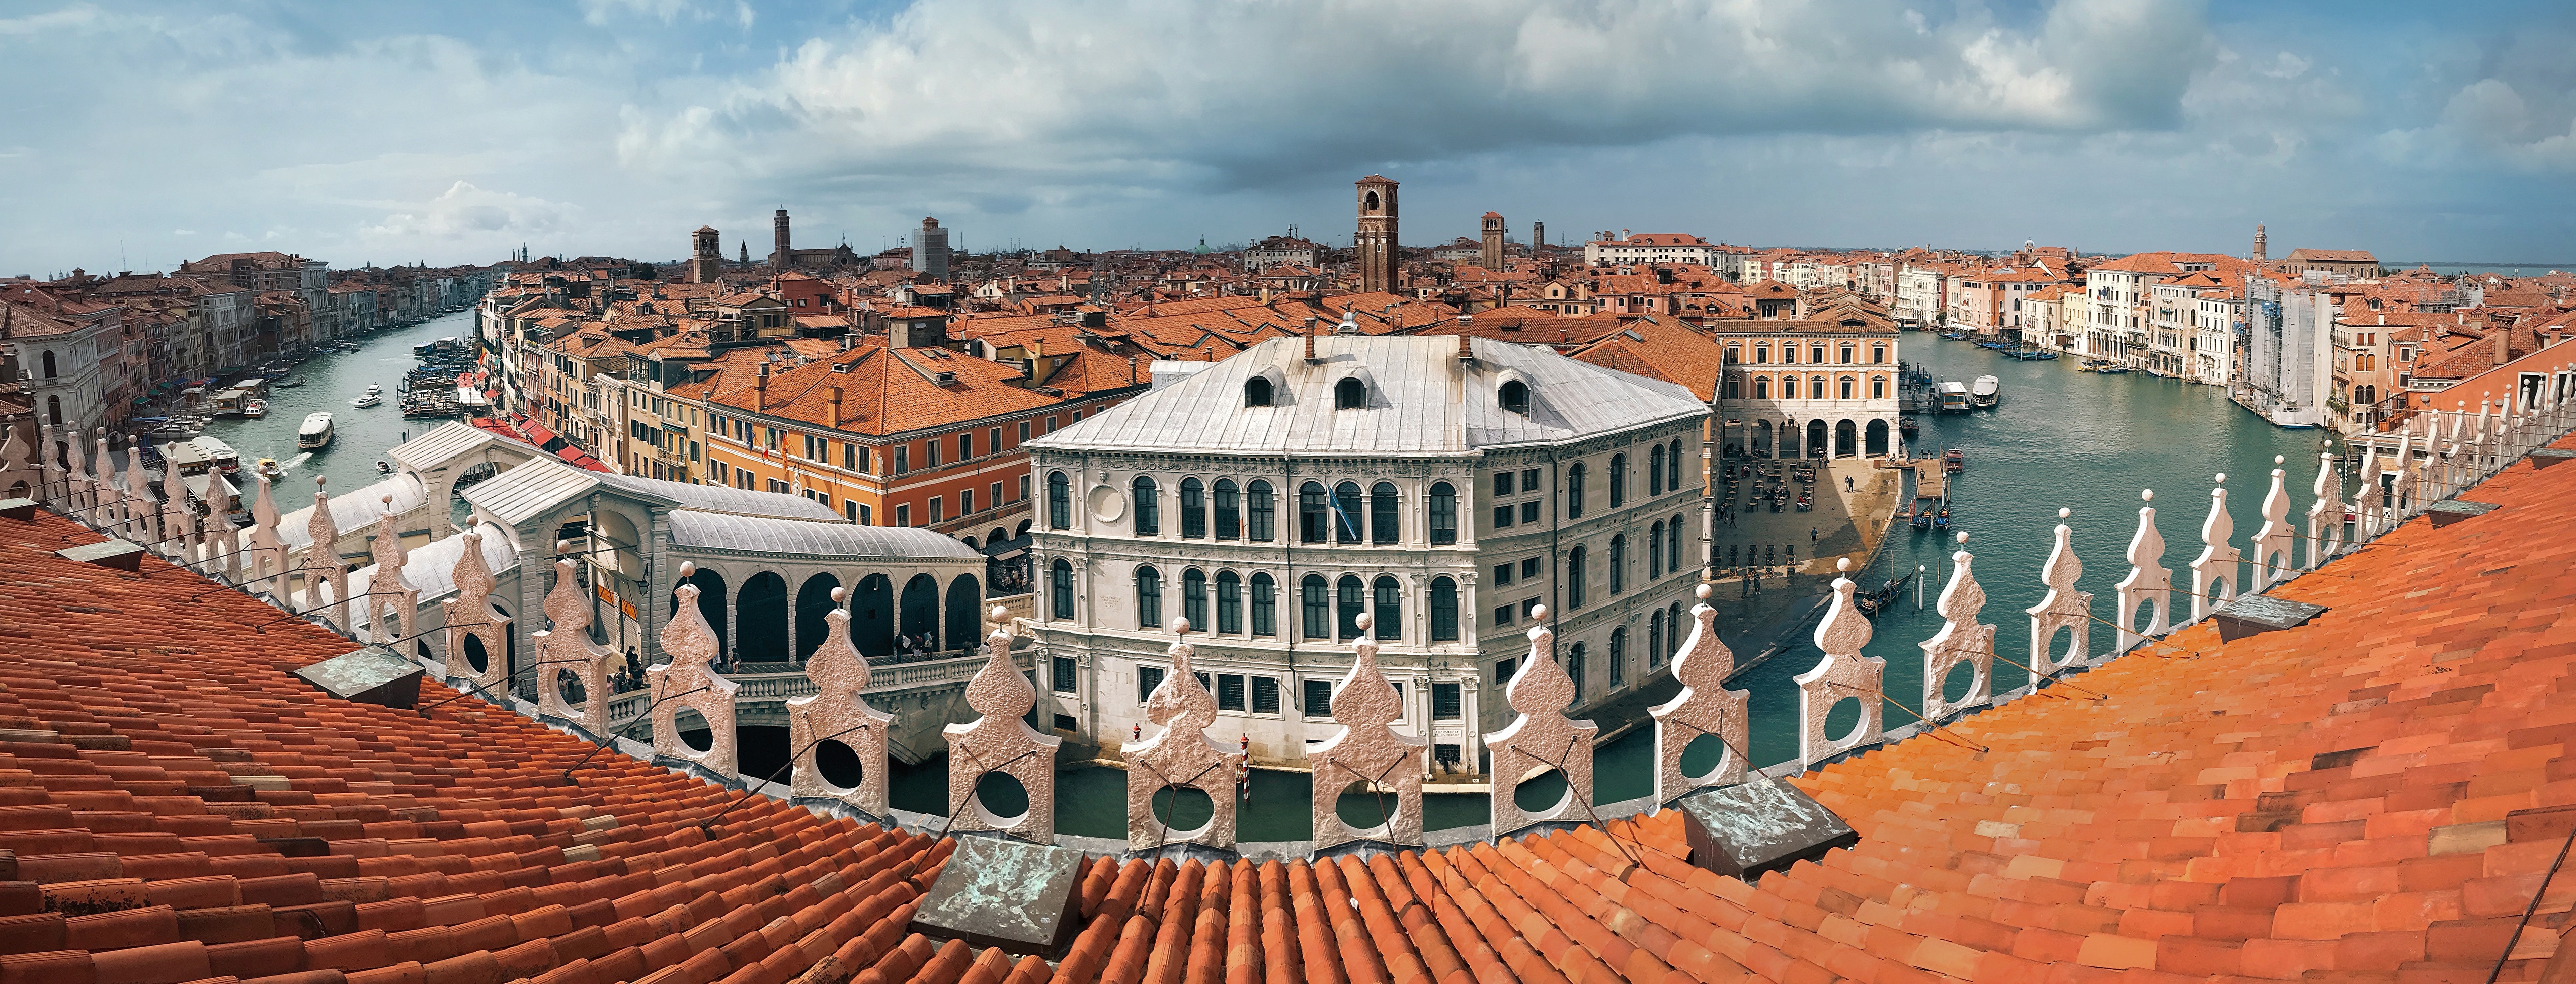 Фото бесплатно Венеции, панорама, города